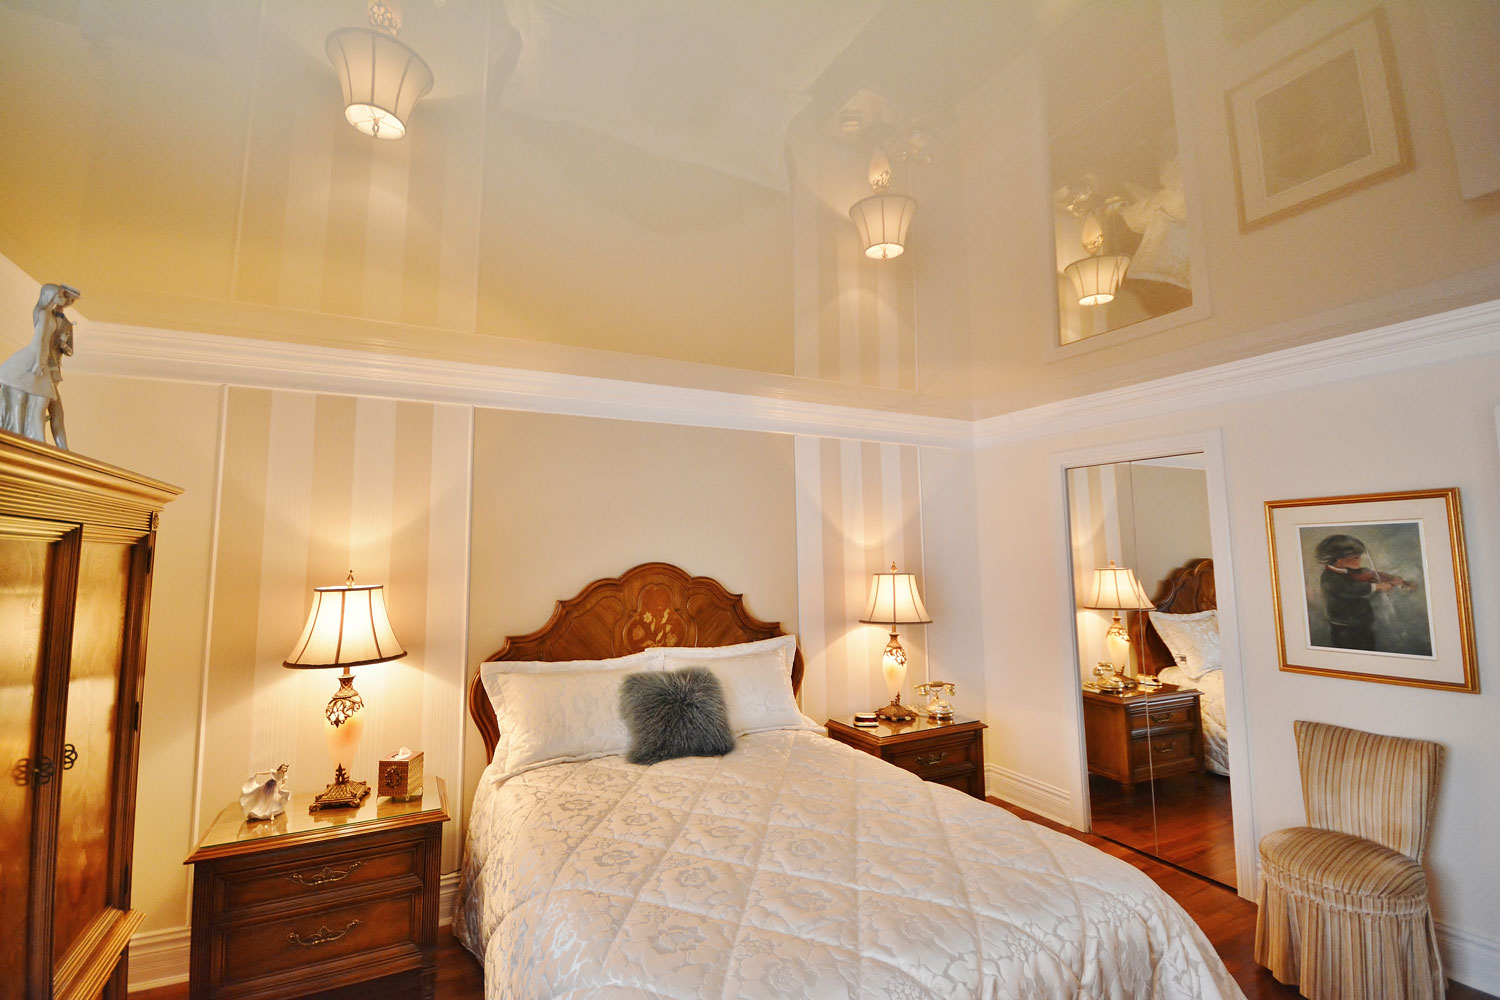 Спокойный пастельного цвета натяжной потолок в спальне